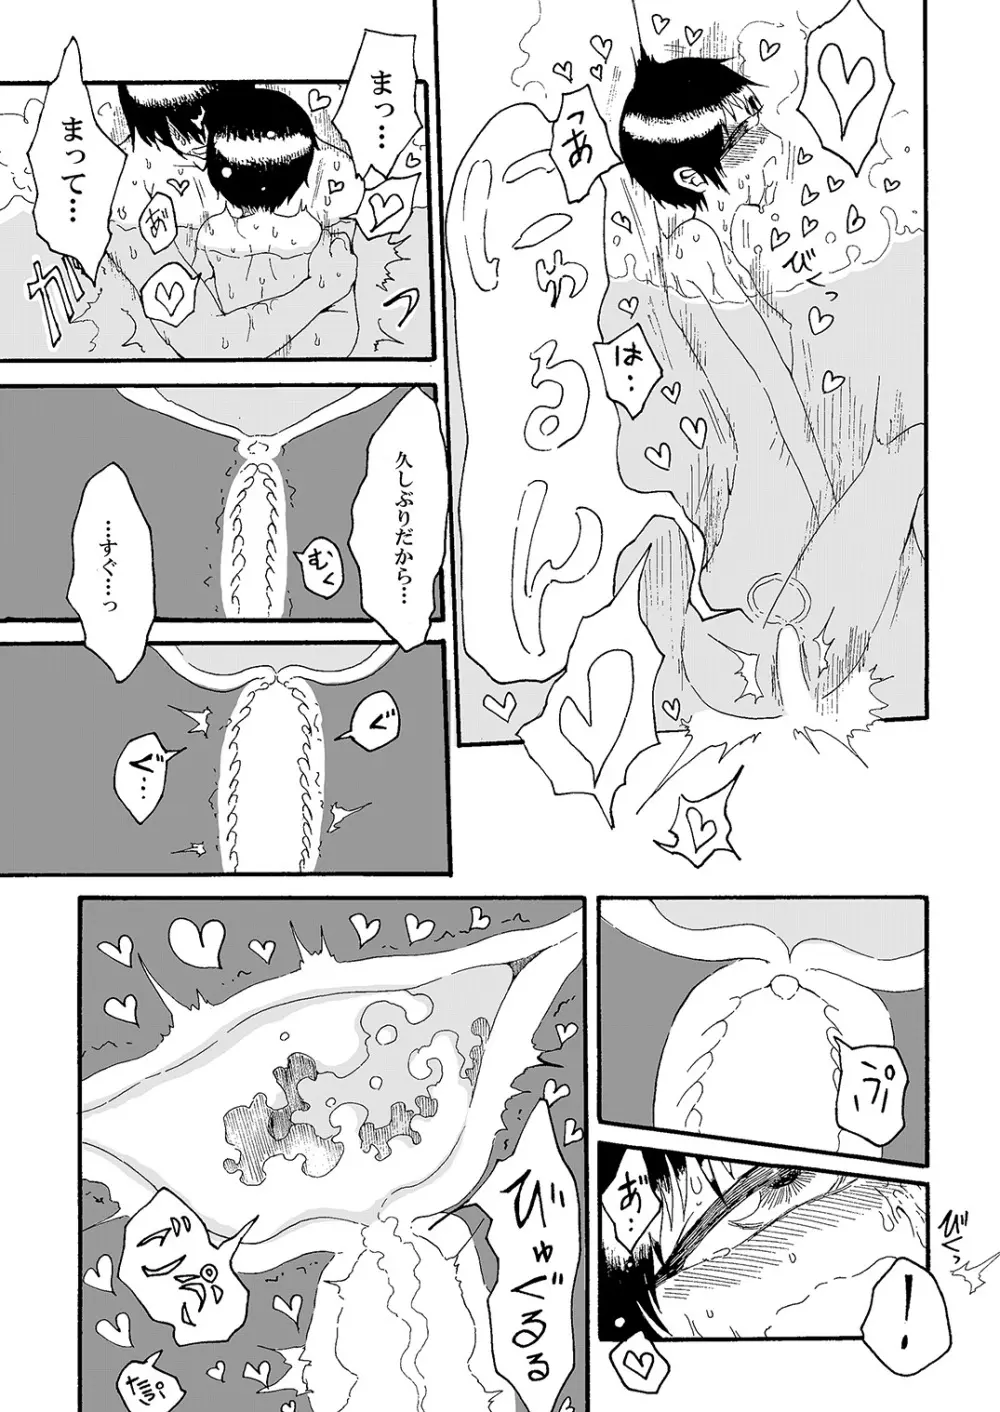 単眼ちゃん拾って飼う漫画 - page11